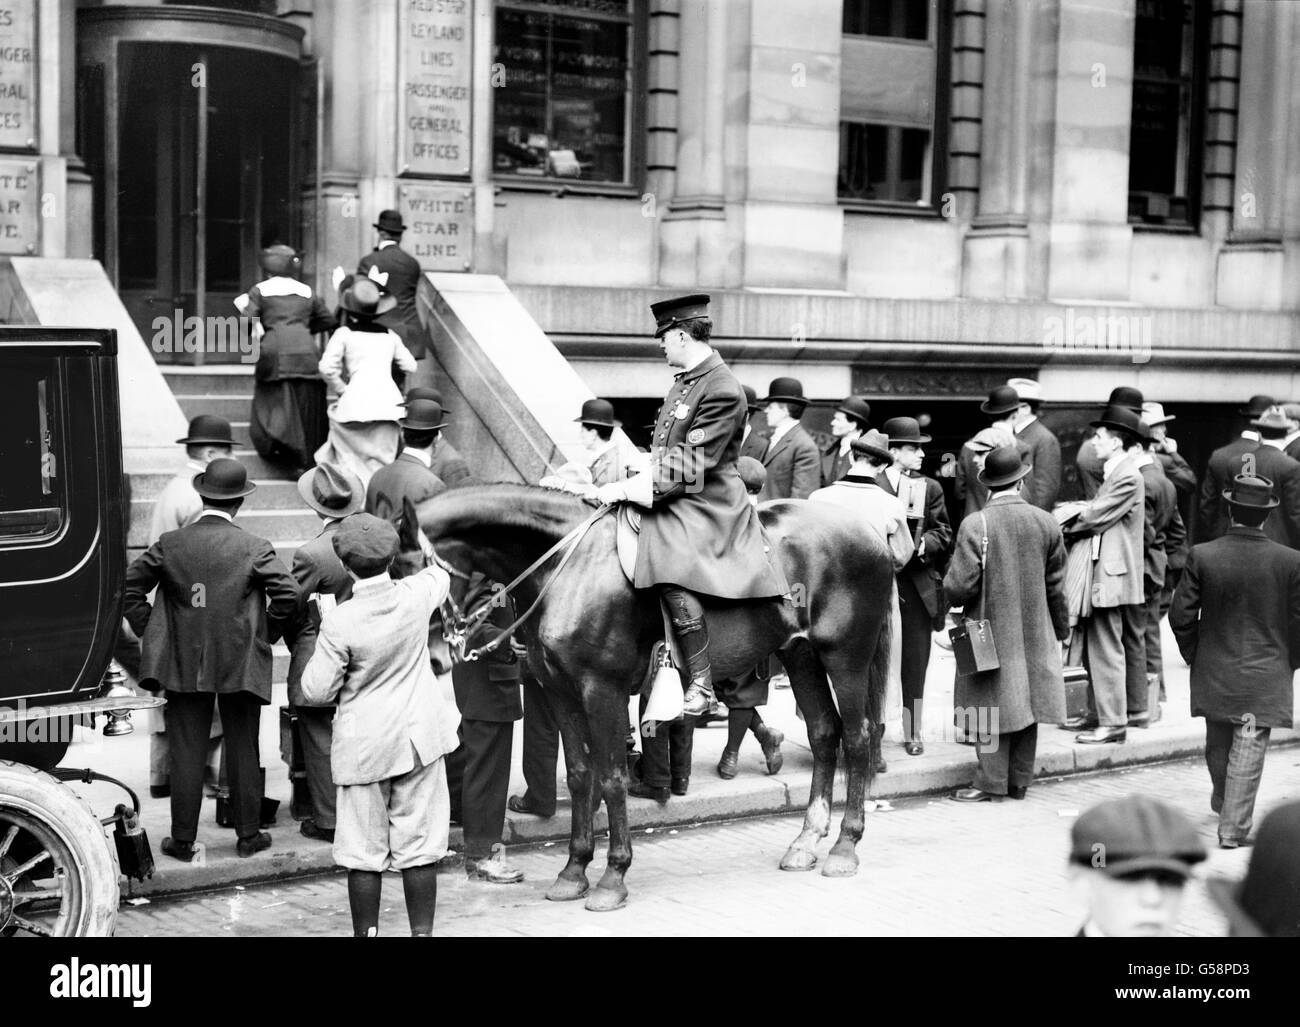 Foule rassemblée devant la White Star des bureaux à New York, en avril 1912, en attente de nouvelles du naufrage du Titanic. Photo de Bain News Service. Banque D'Images